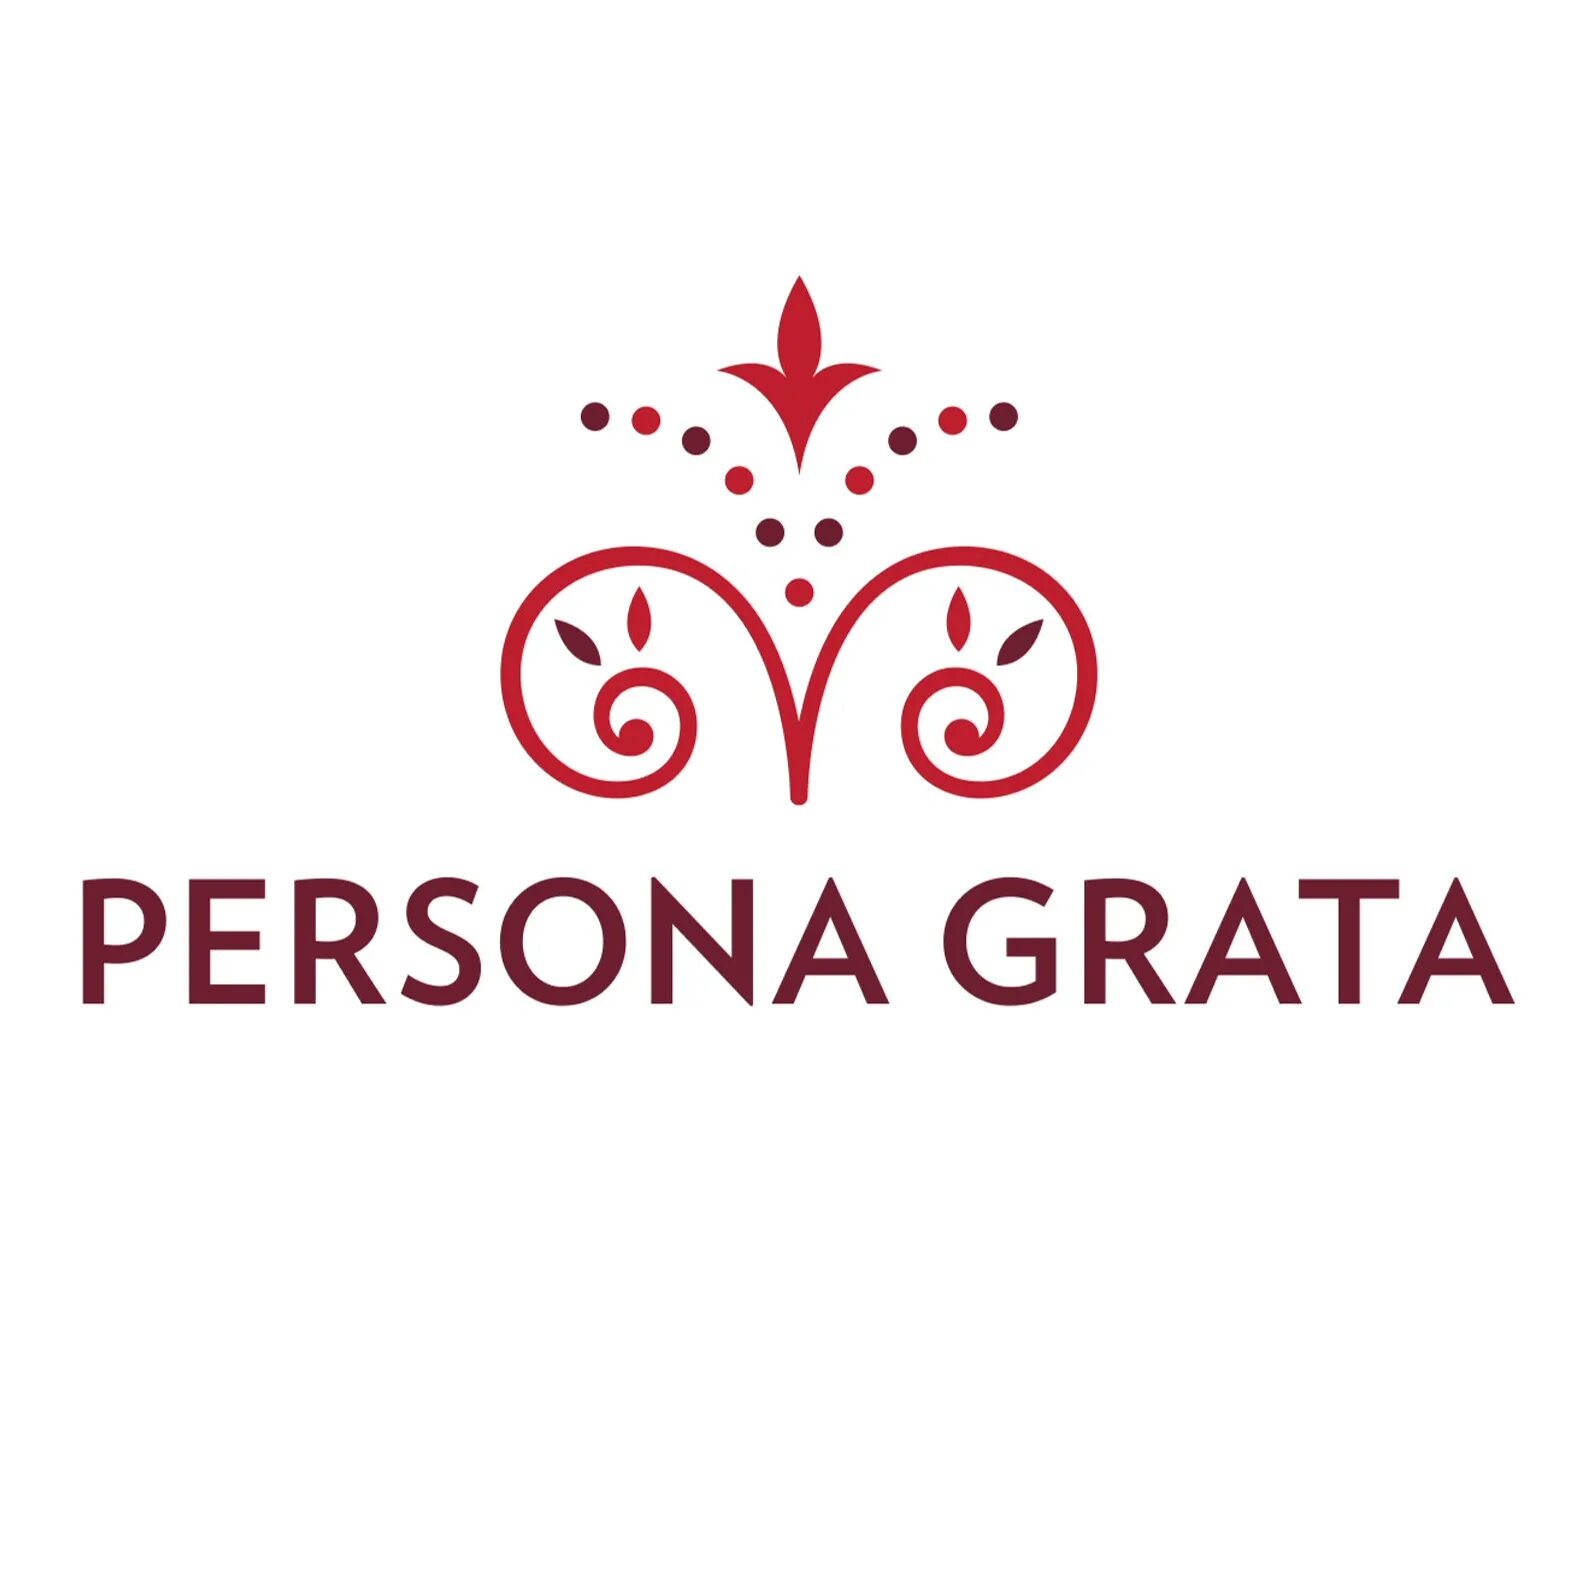 Персона грата что это значит простыми словами. Персона грата. Grata логотип. ООО "персона грата". Persona grata ресторан.